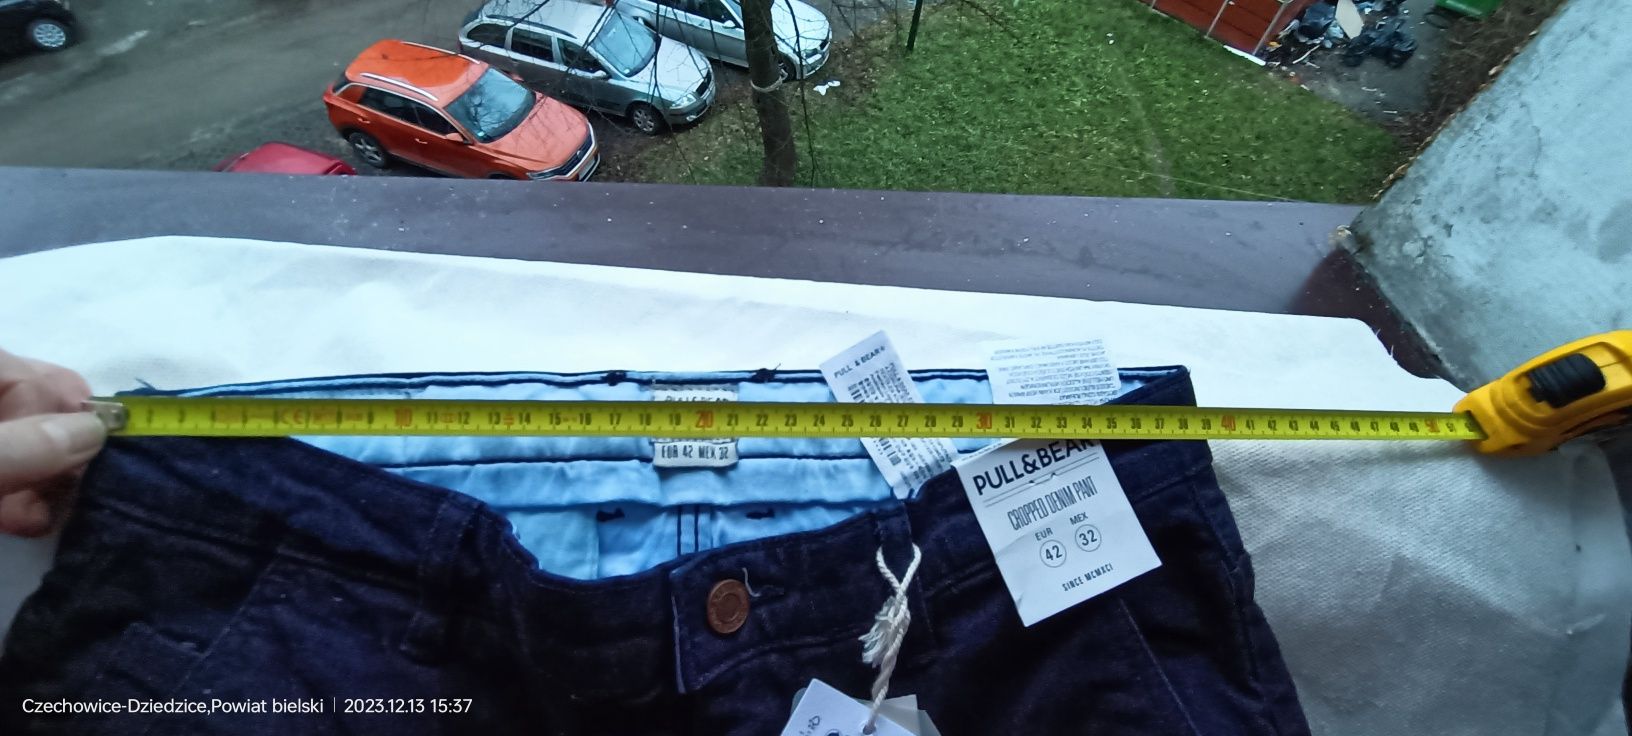 Sprzedam spodnie damskie jeansy Pull & Bear nowe z metką 42 r